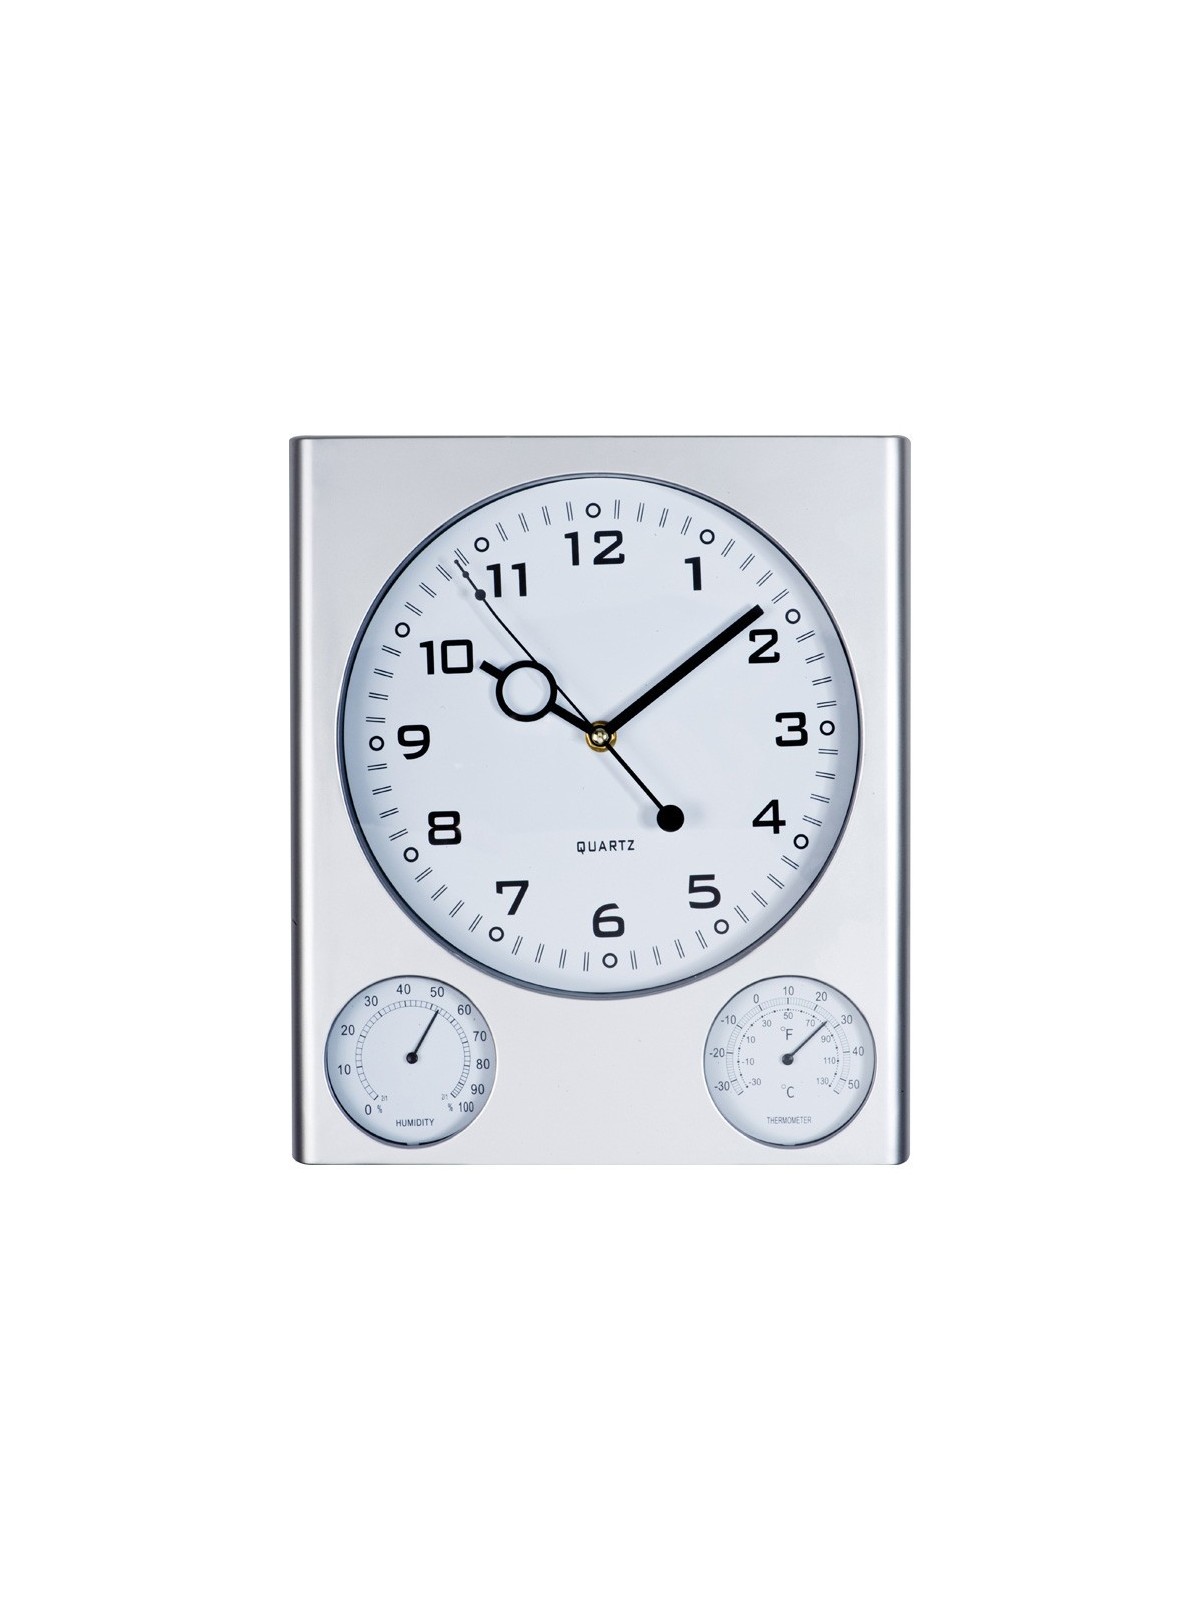 38-249 Horloge publicitaire avec thermomètre  personnalisé